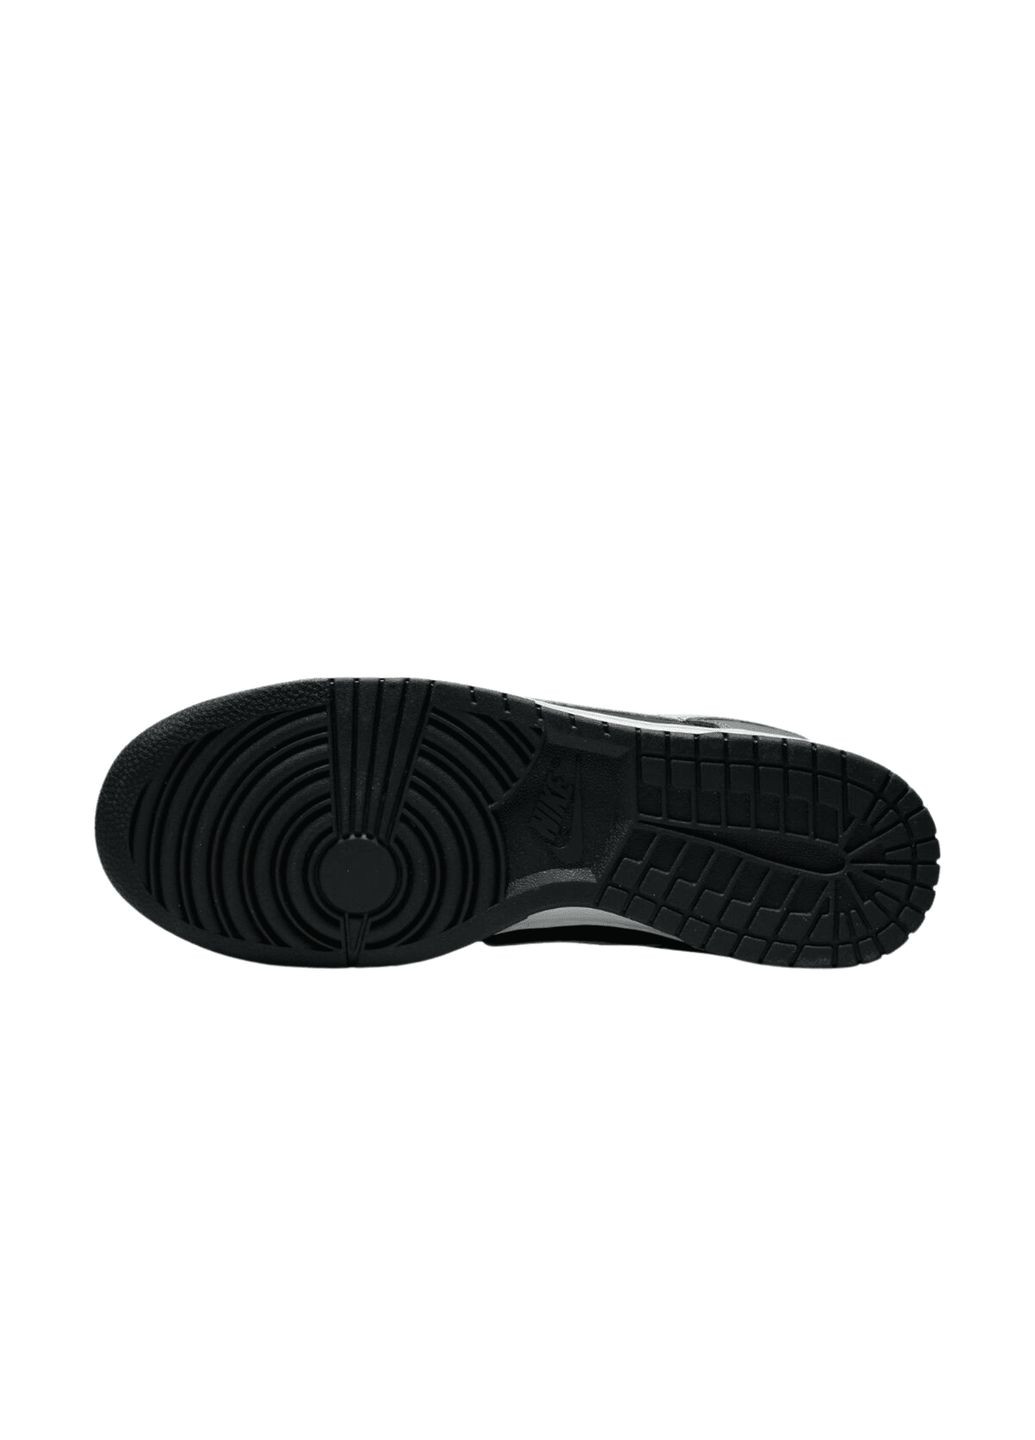 Зеленые всесезонные кроссовки мужские оригинал кроссовки мужские dunk low retro fb3359-001 весна-осень кожа черно-серые Nike